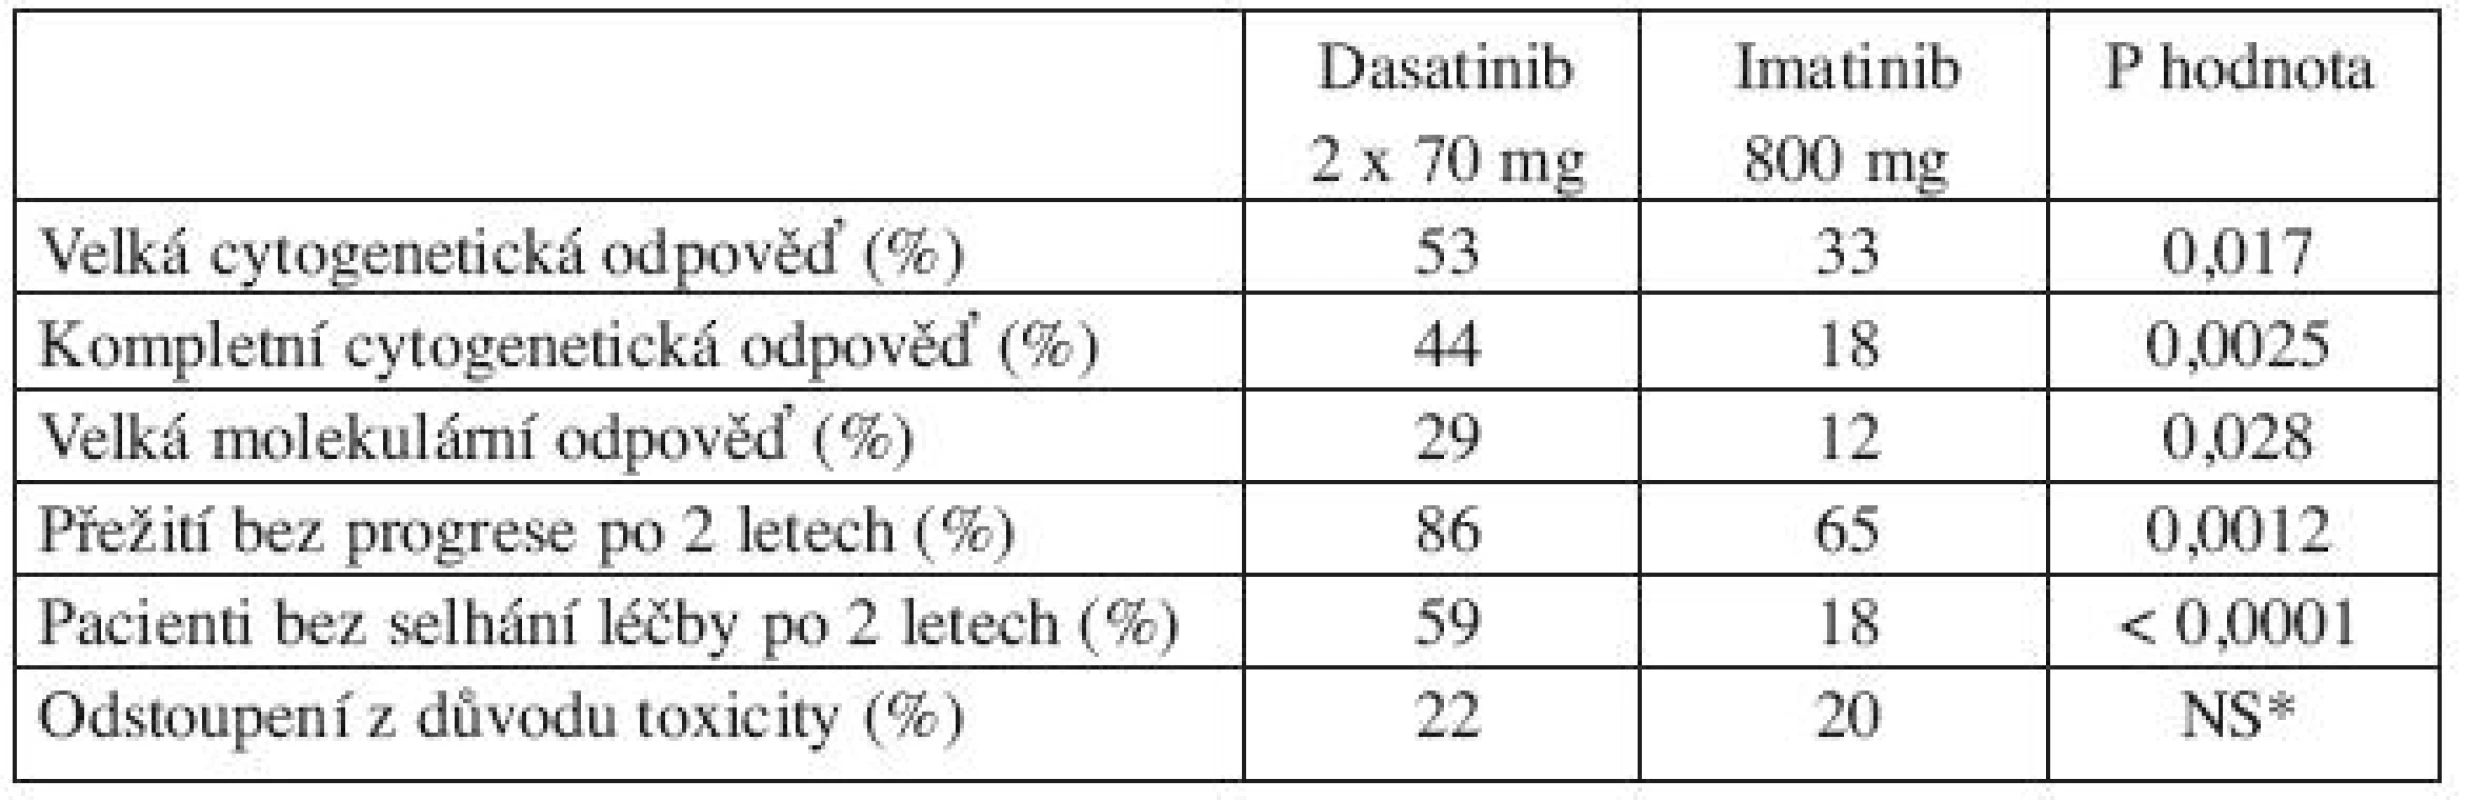 Porovnání dasatinibu a imatinibu 800 mg po 2 letech léčby pacientů s CP-CML s rezistencí k imatinibu 400–600 mg (23).